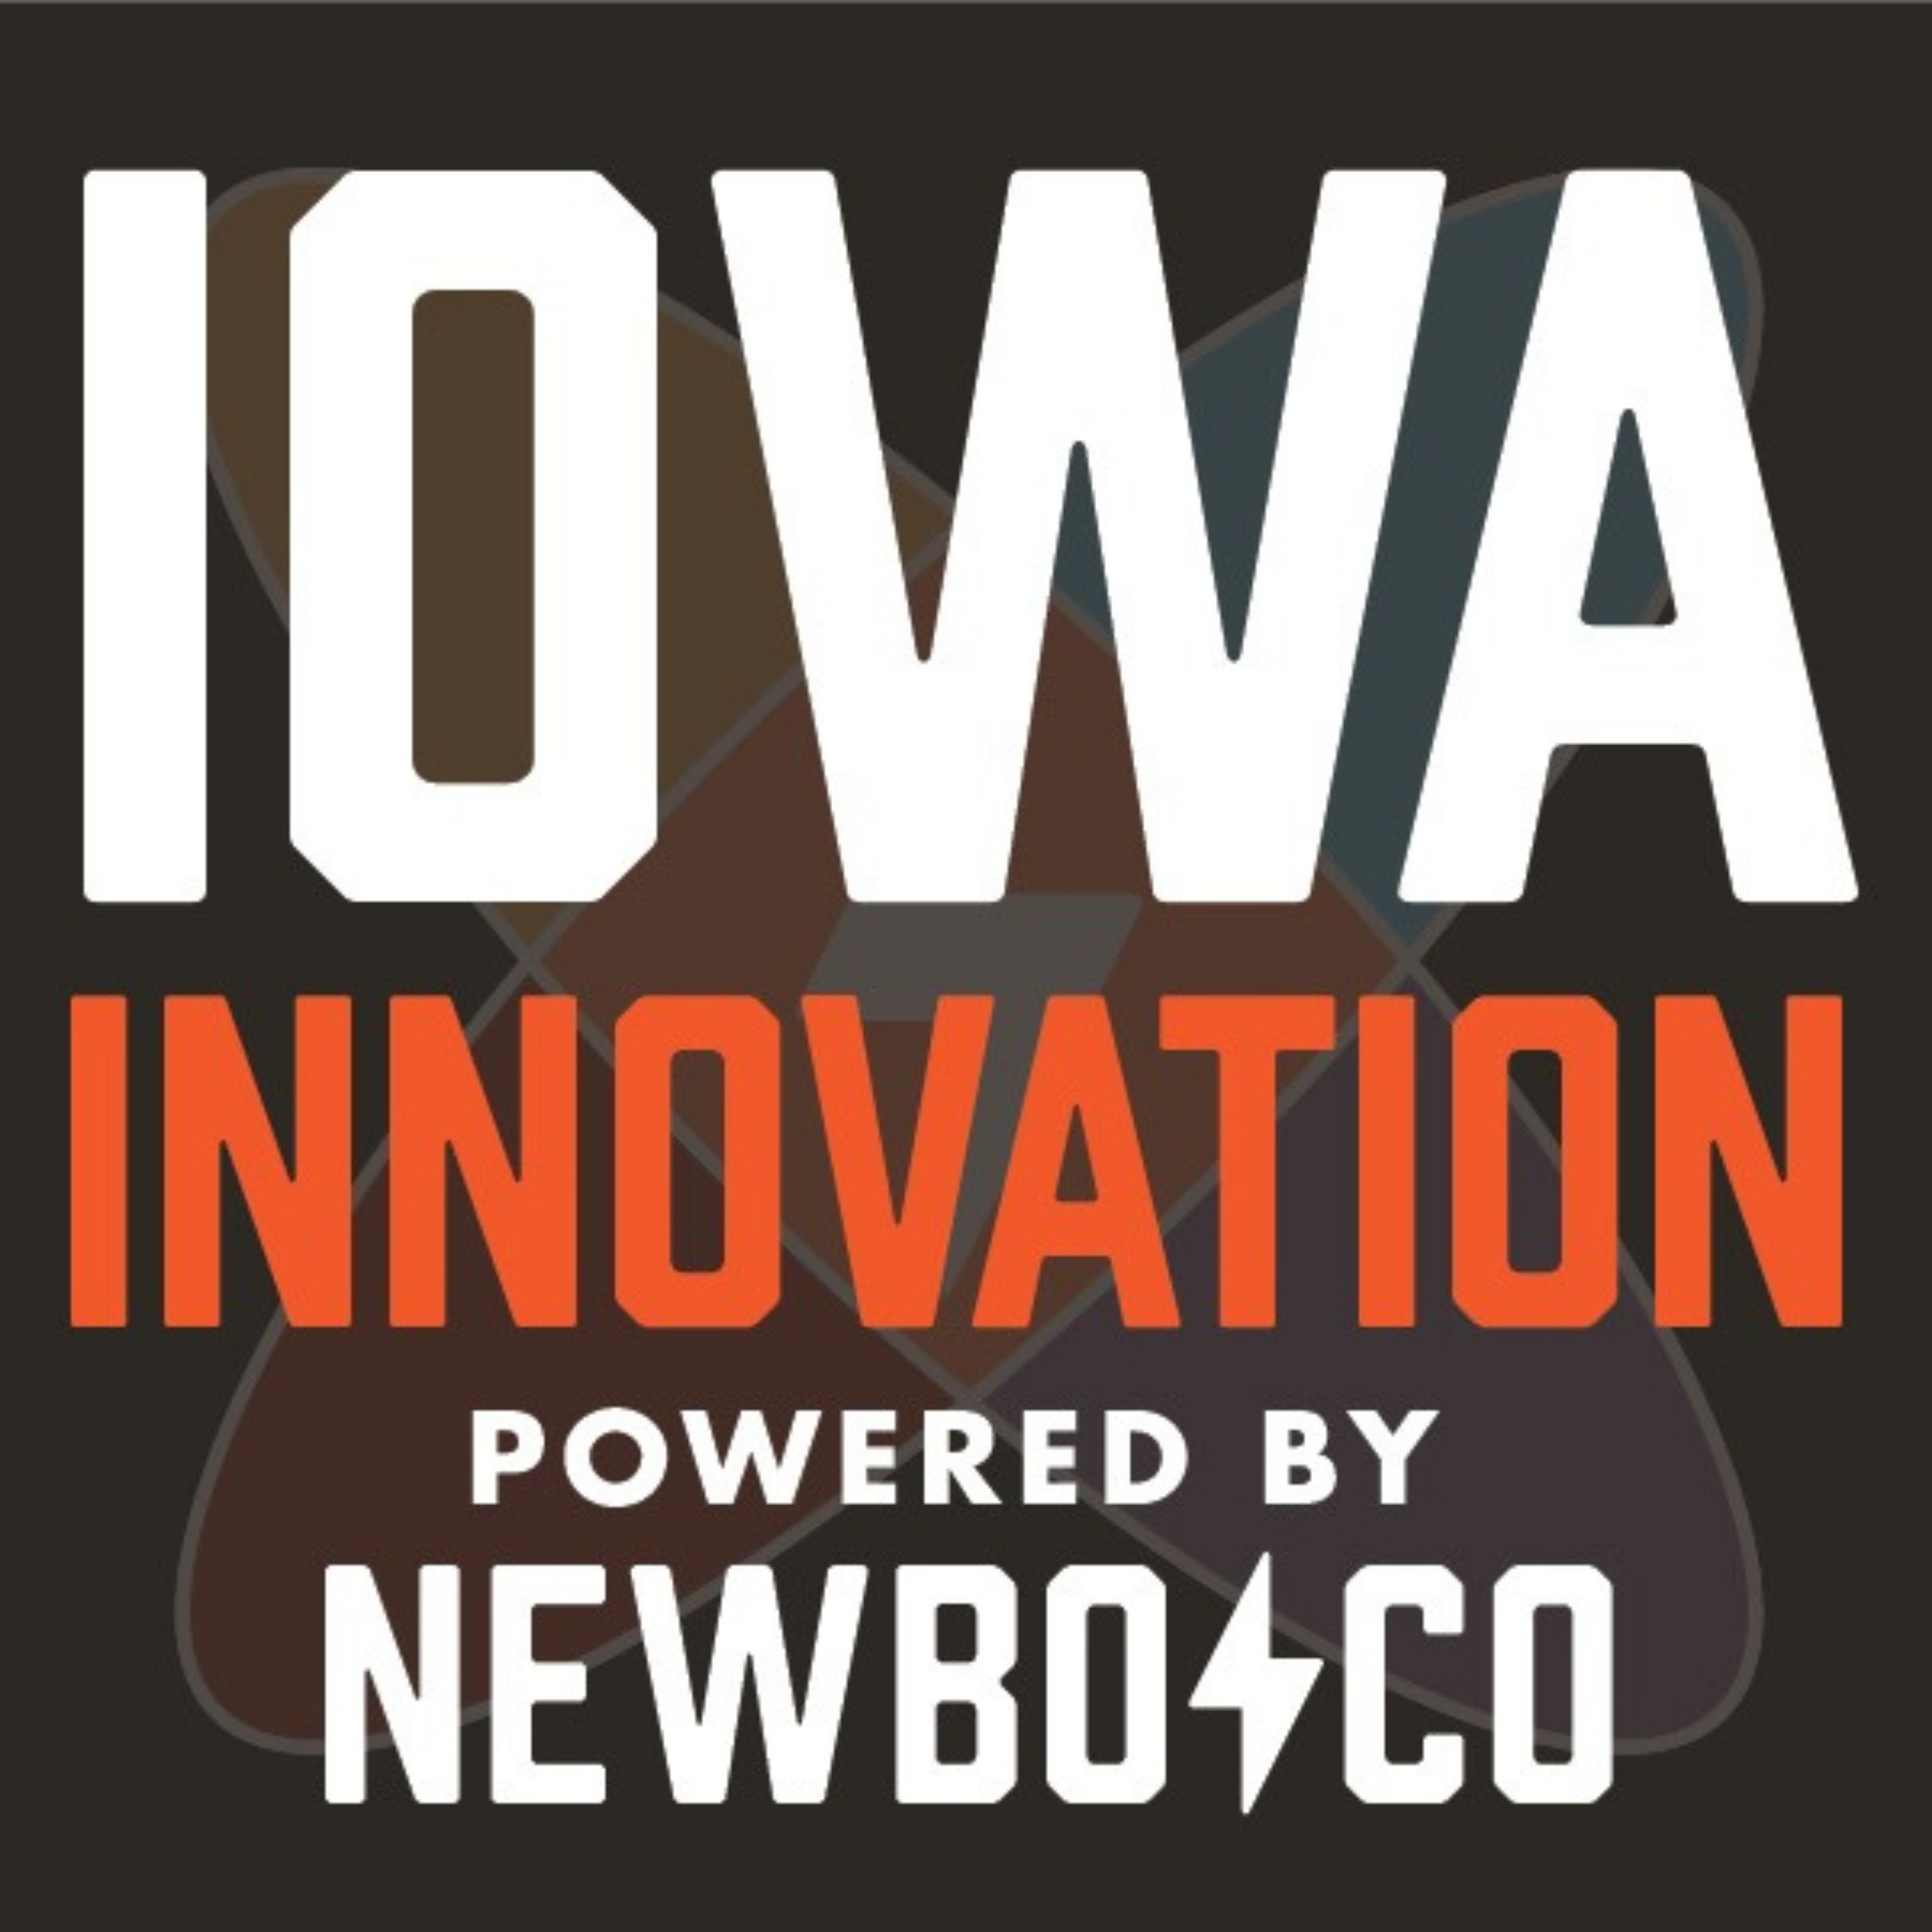 Artwork for Iowa Innovation, Powered by NewBoCo